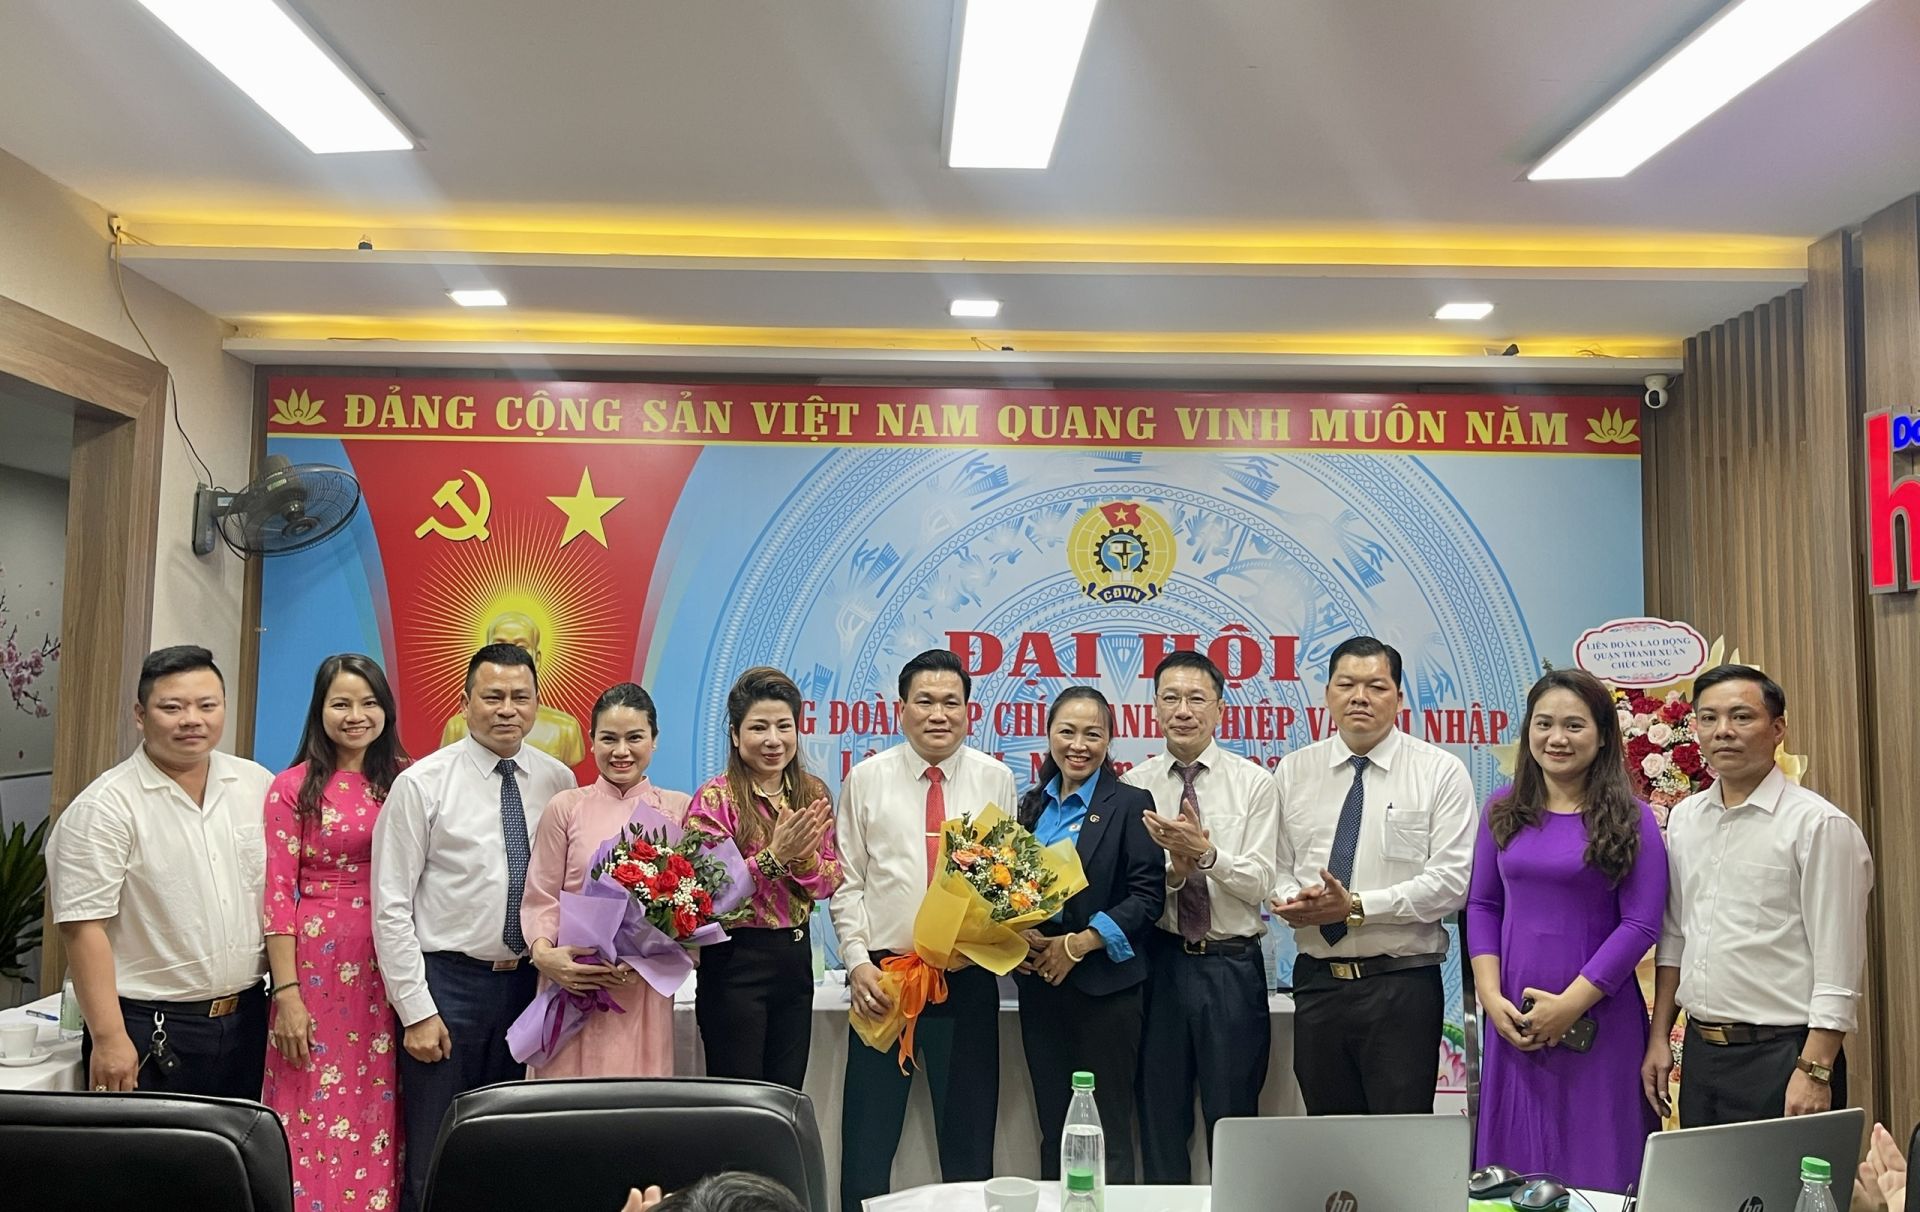 Đại diện Liên đoàn lao động quận Thanh Xuân và lãnh đạo Tạp chí tặng hoa cho Ban chấp hành công đoàn nhiệm kỳ mới